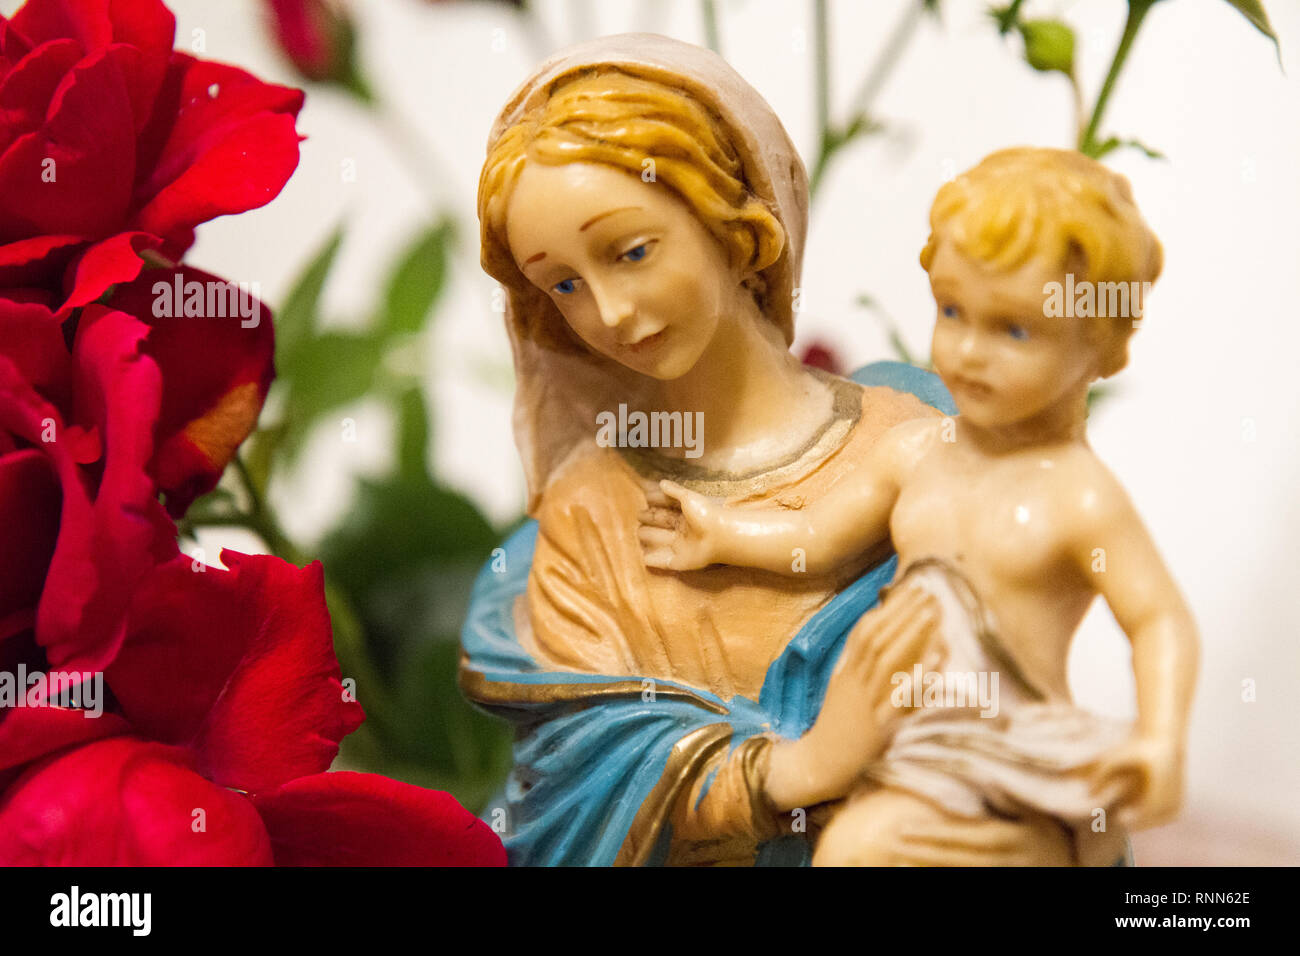 Une statue de la Vierge Marie avec l'Enfant Jésus dans ses bras, à côté d'un bouquet de roses dans une chapelle. Banque D'Images